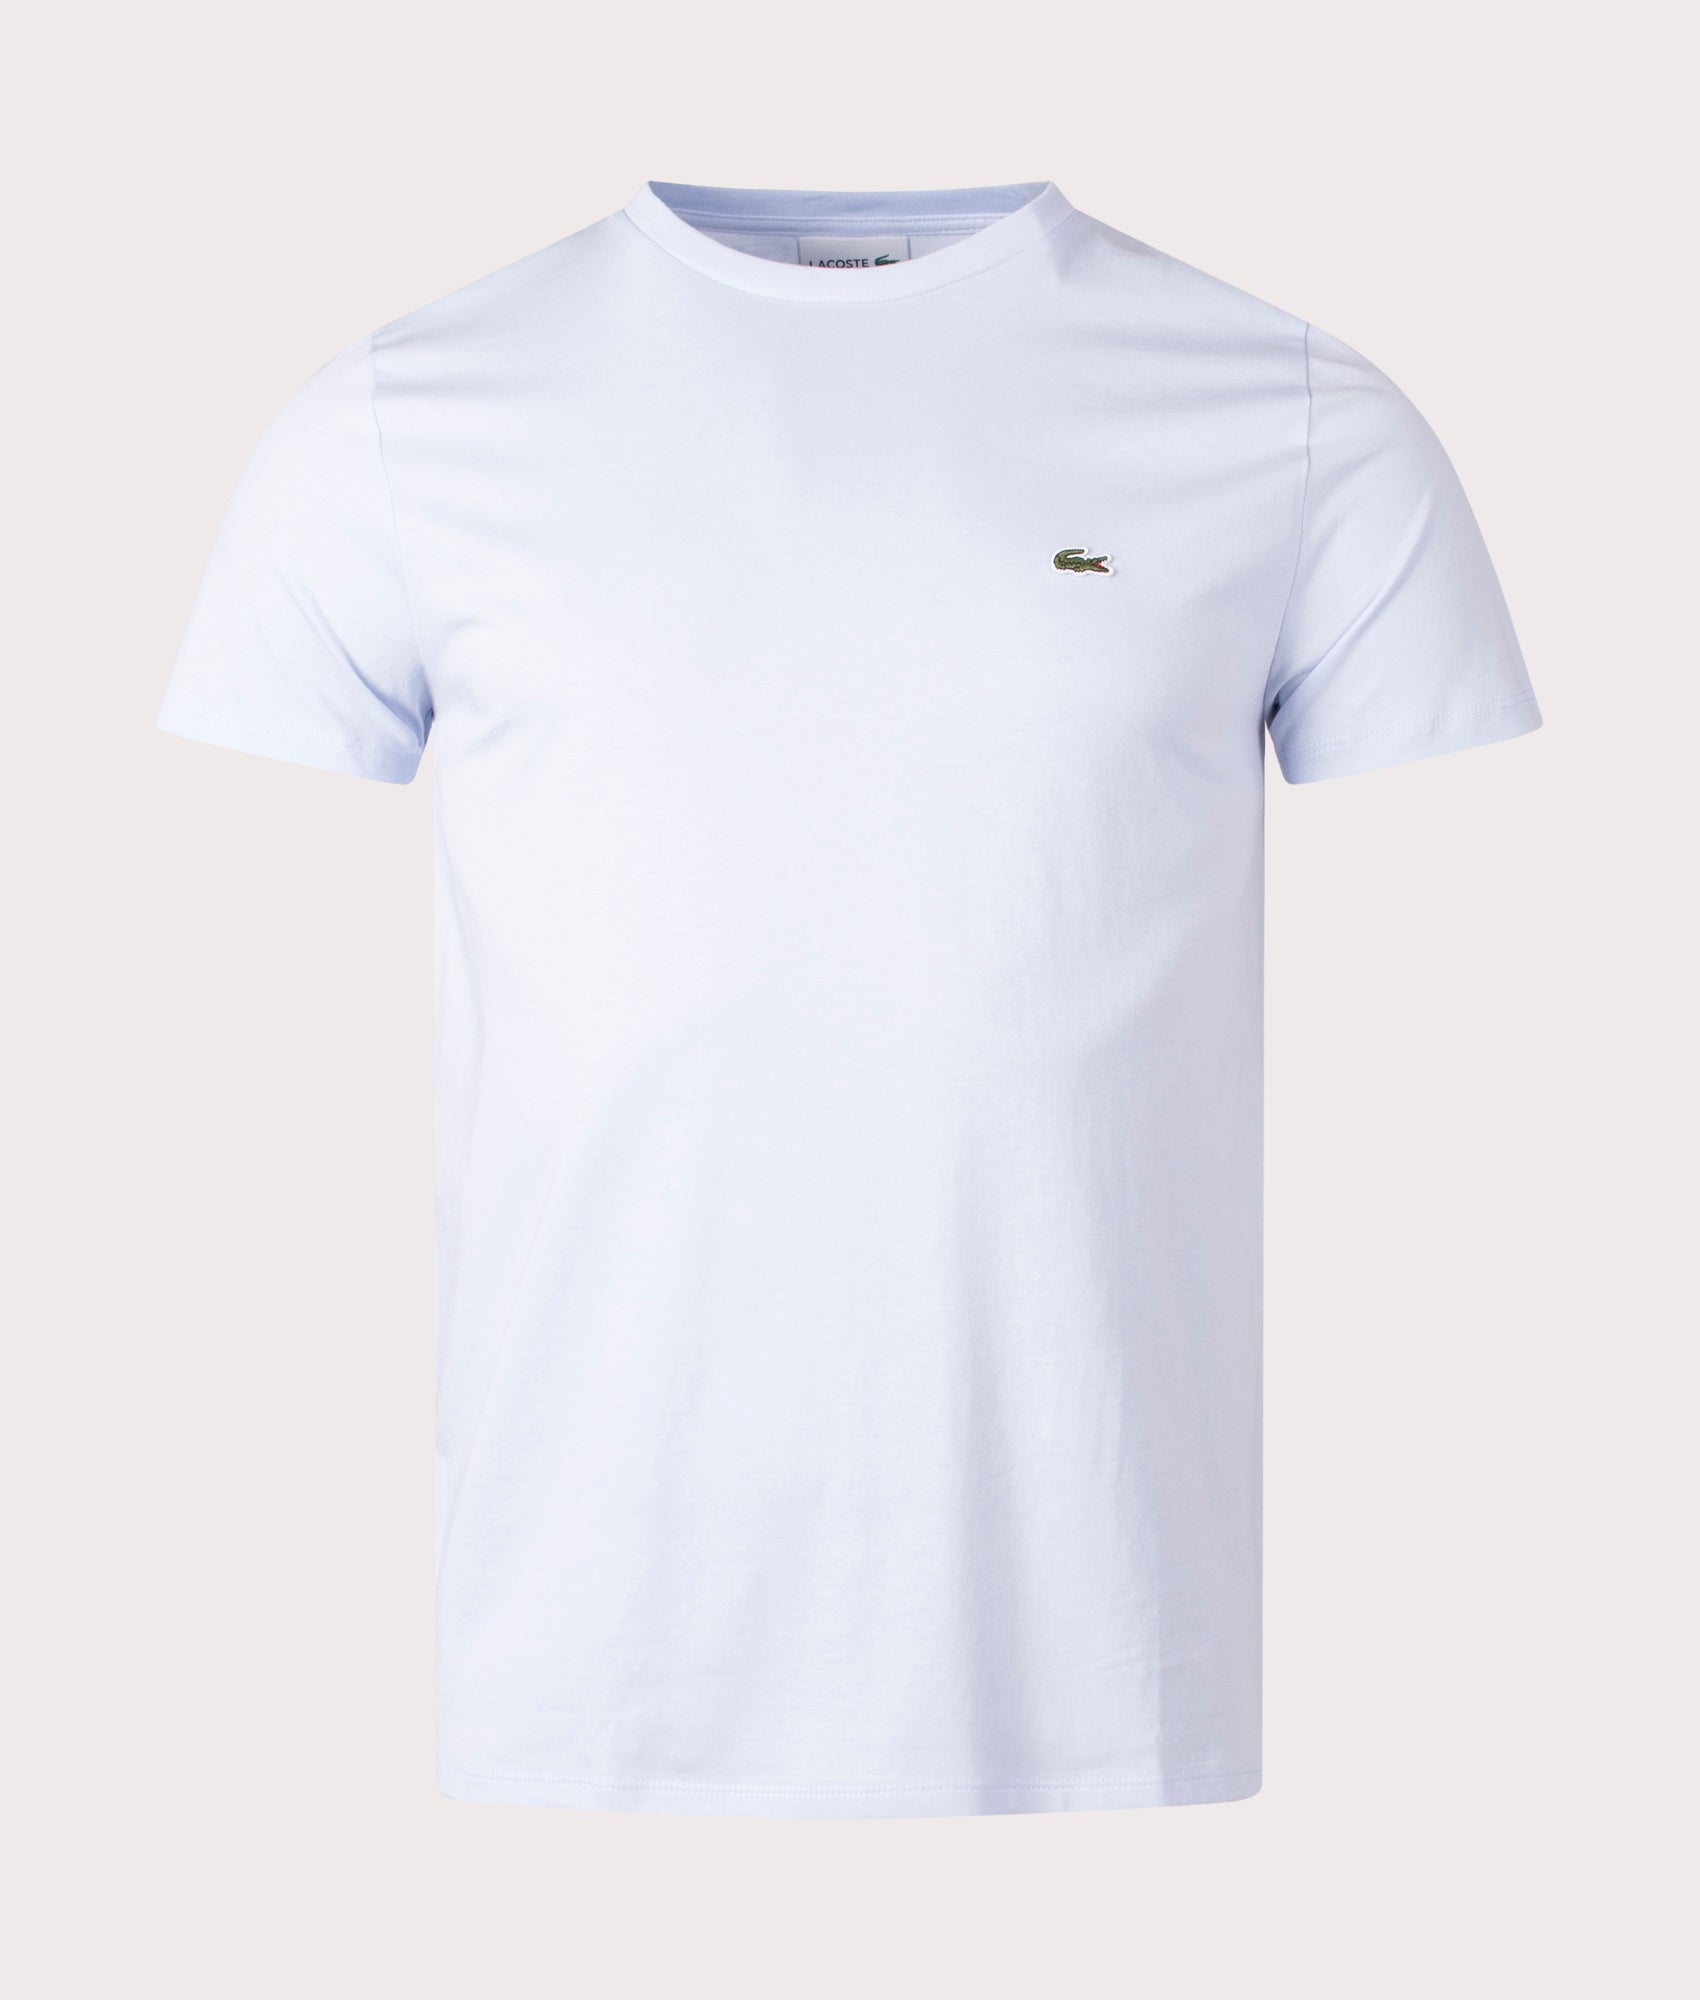 Lacoste Mens Pima Cotton Croc Logo T-Shirt - Colour: J2G Phoenix Blue - Size: 4/M